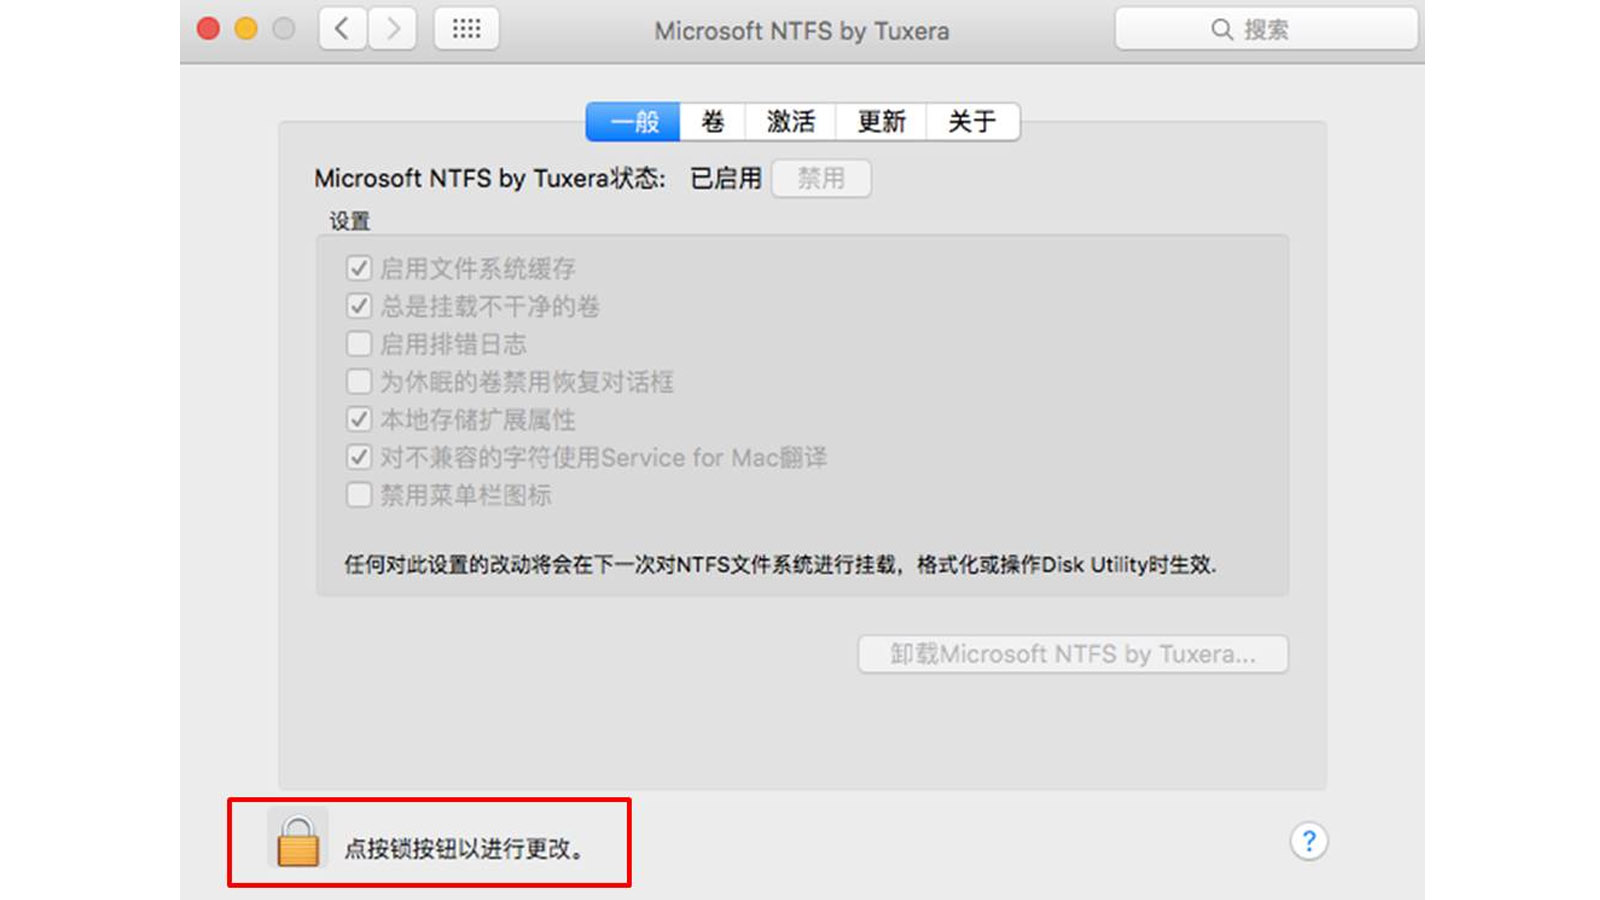 安装Tuxera NTFS for Mac后，仍无法将数据写入NTFS解决方案